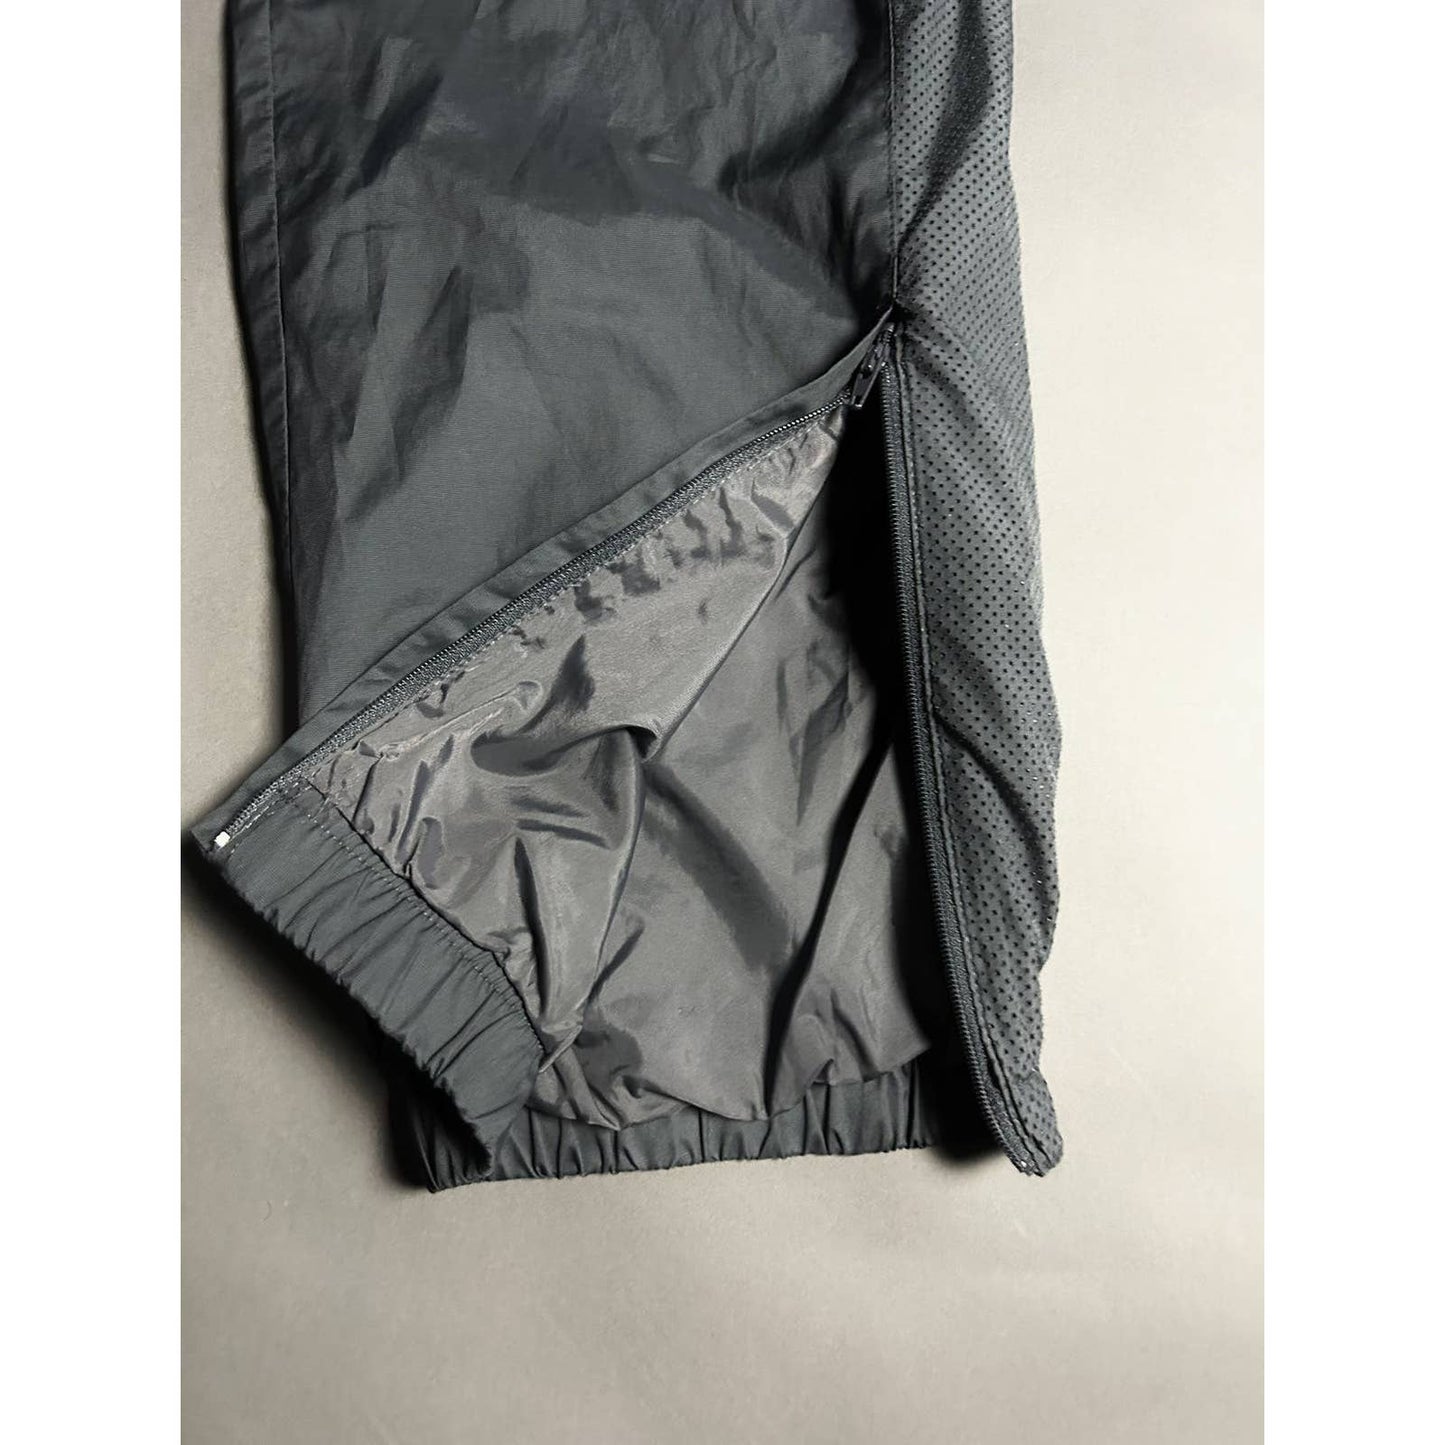 Nike track suit vintage grey pants windbreaker hooded